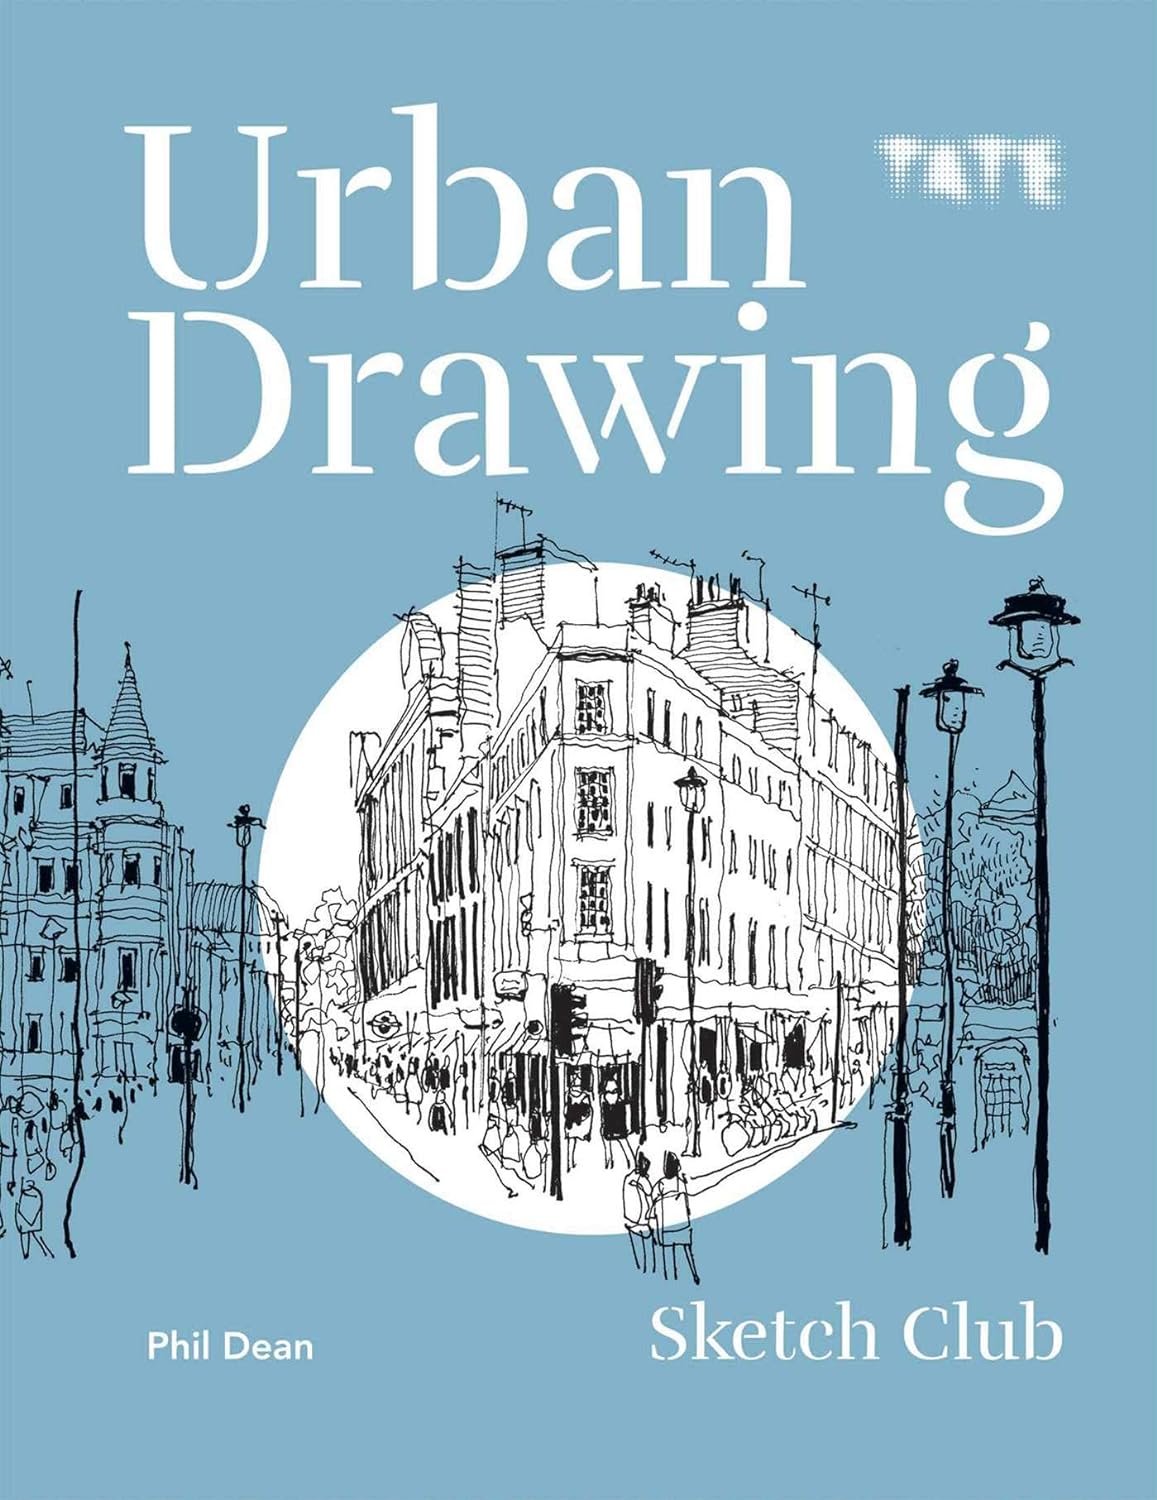 Urban Drawing (Sketch Club)